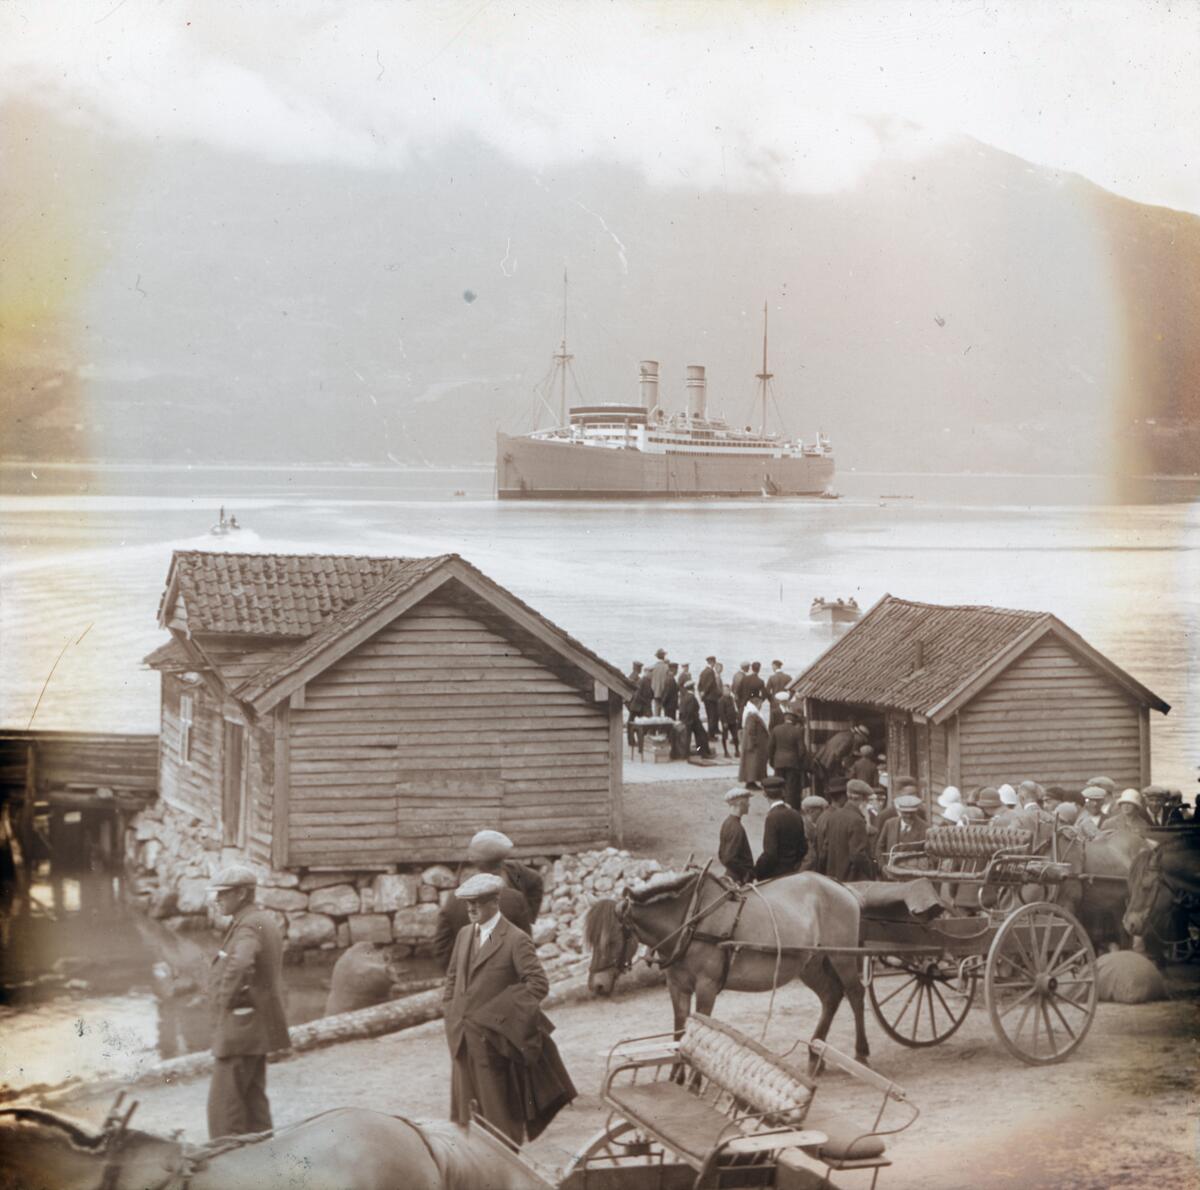 Dias. Passasjerskipet "Stavangerfjord" ligger på fjorden ved Loen. I forgrunnen står flere grupper med kvinner og menn på en brygge og blant uthus ved sjøen.  